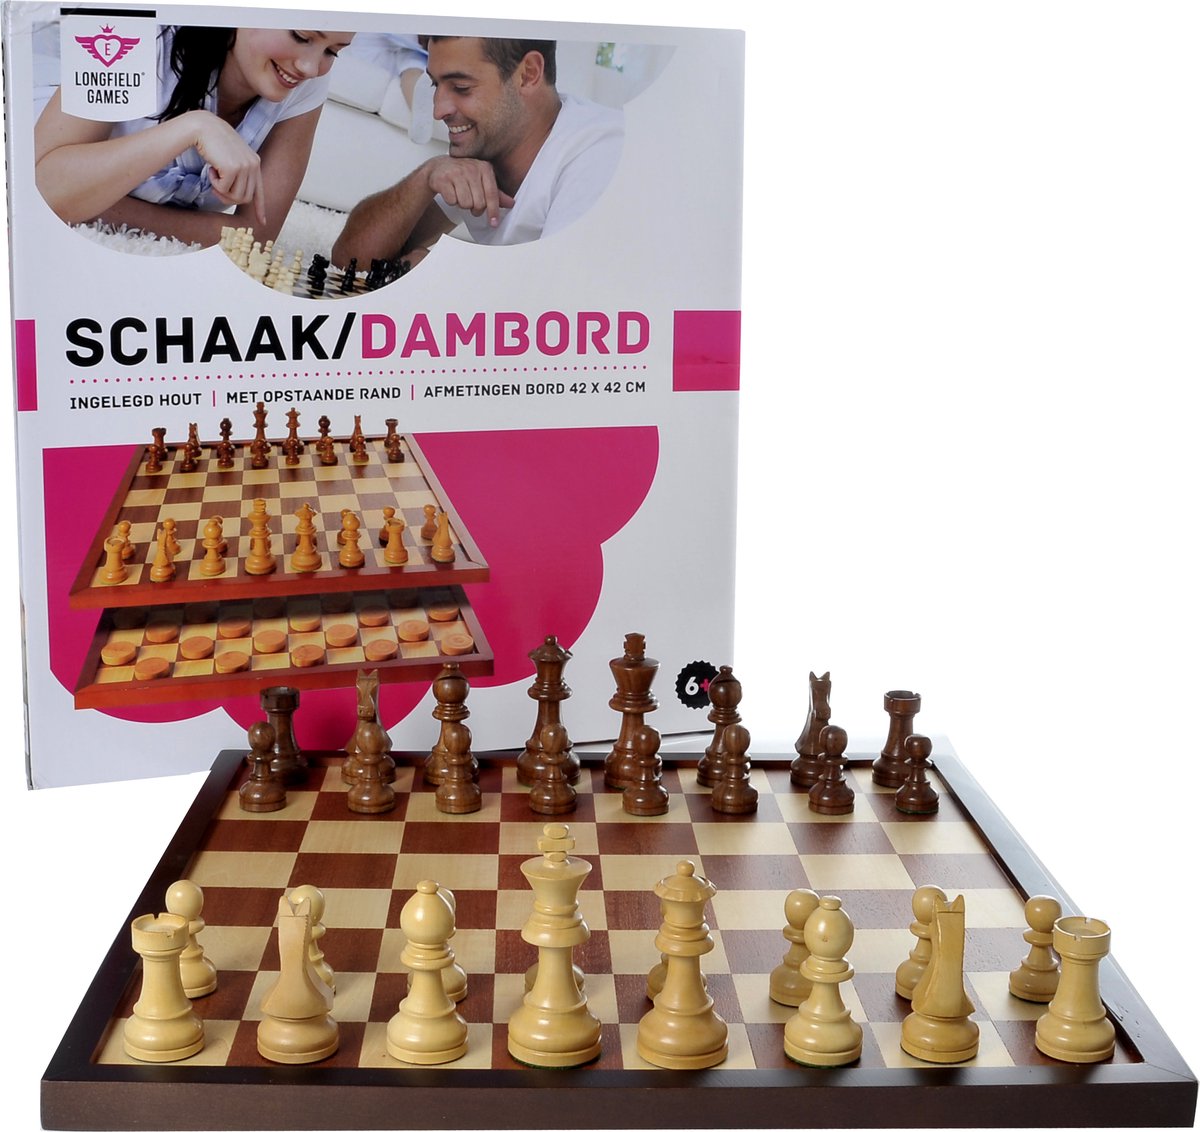 Ongewijzigd draad lening Luxe schaakbord/dambord inclusief schaakstukken en damstenen. -  Sport4clubs.nl sportartikelen